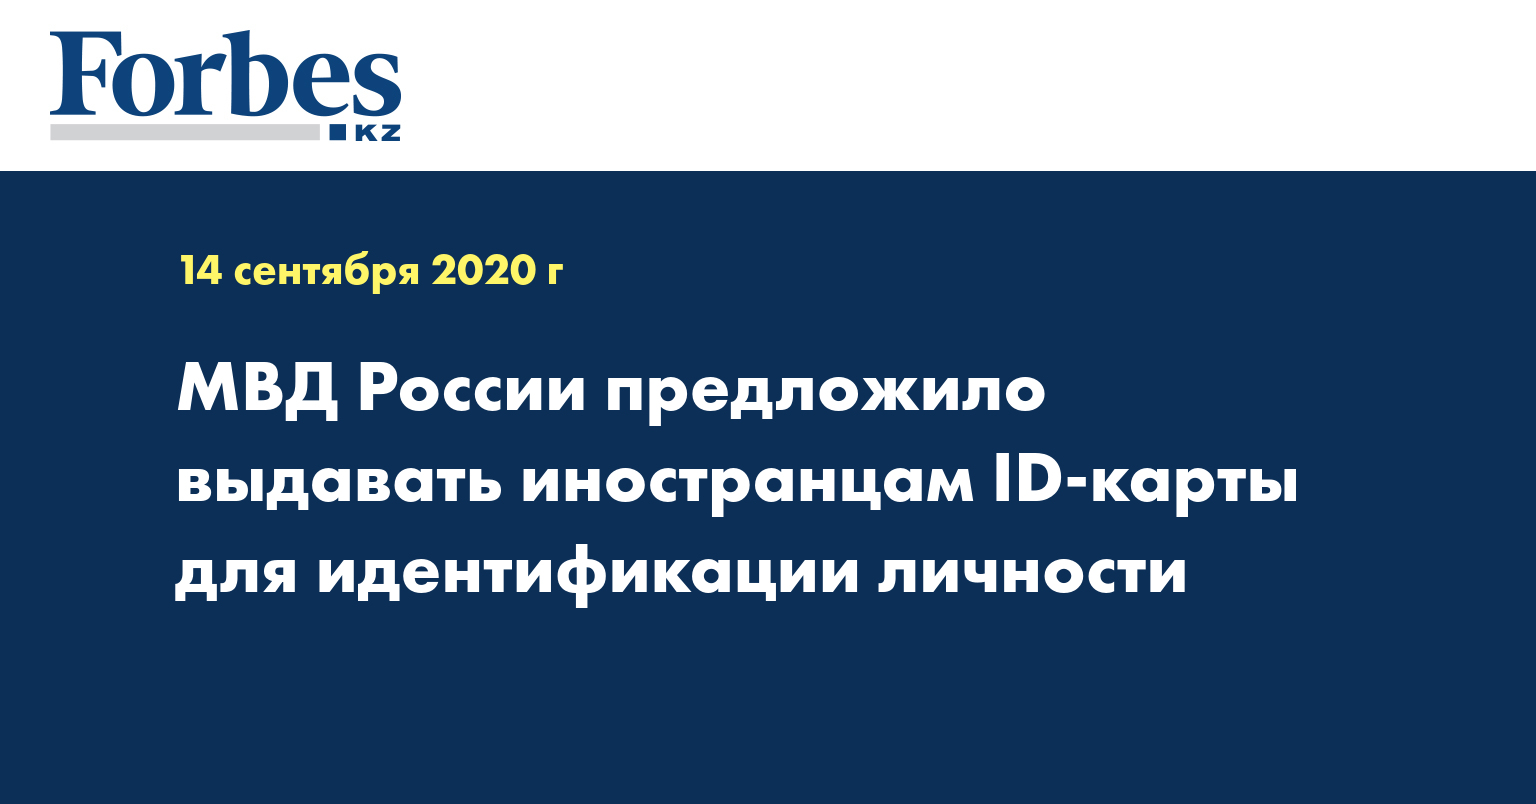 МВД России предложило выдавать иностранцам ID-карты для идентификации личности